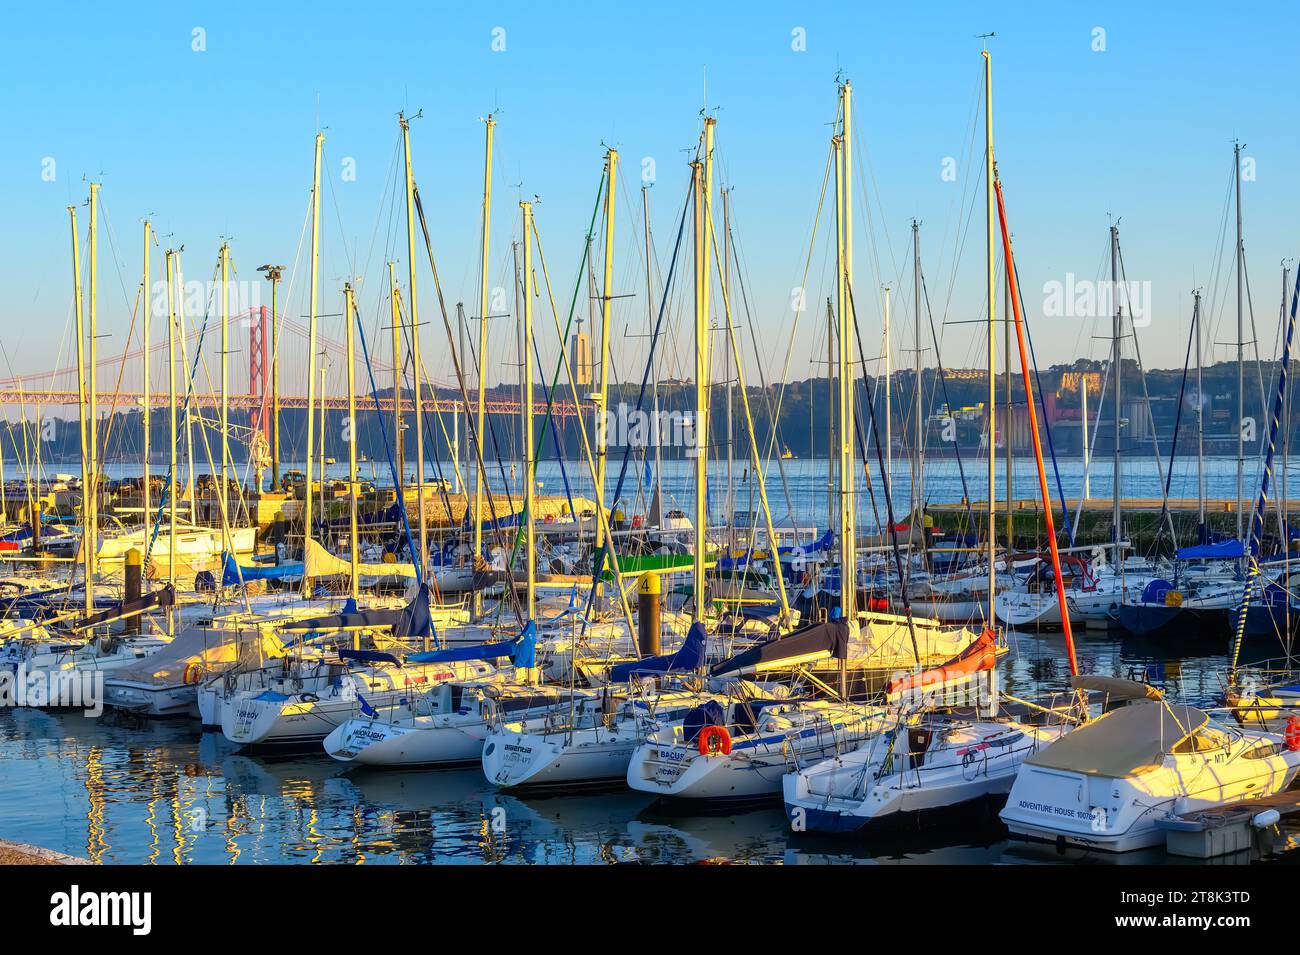 LISBONNE, PORTUGAL, marina dans le quartier du front de mer Banque D'Images